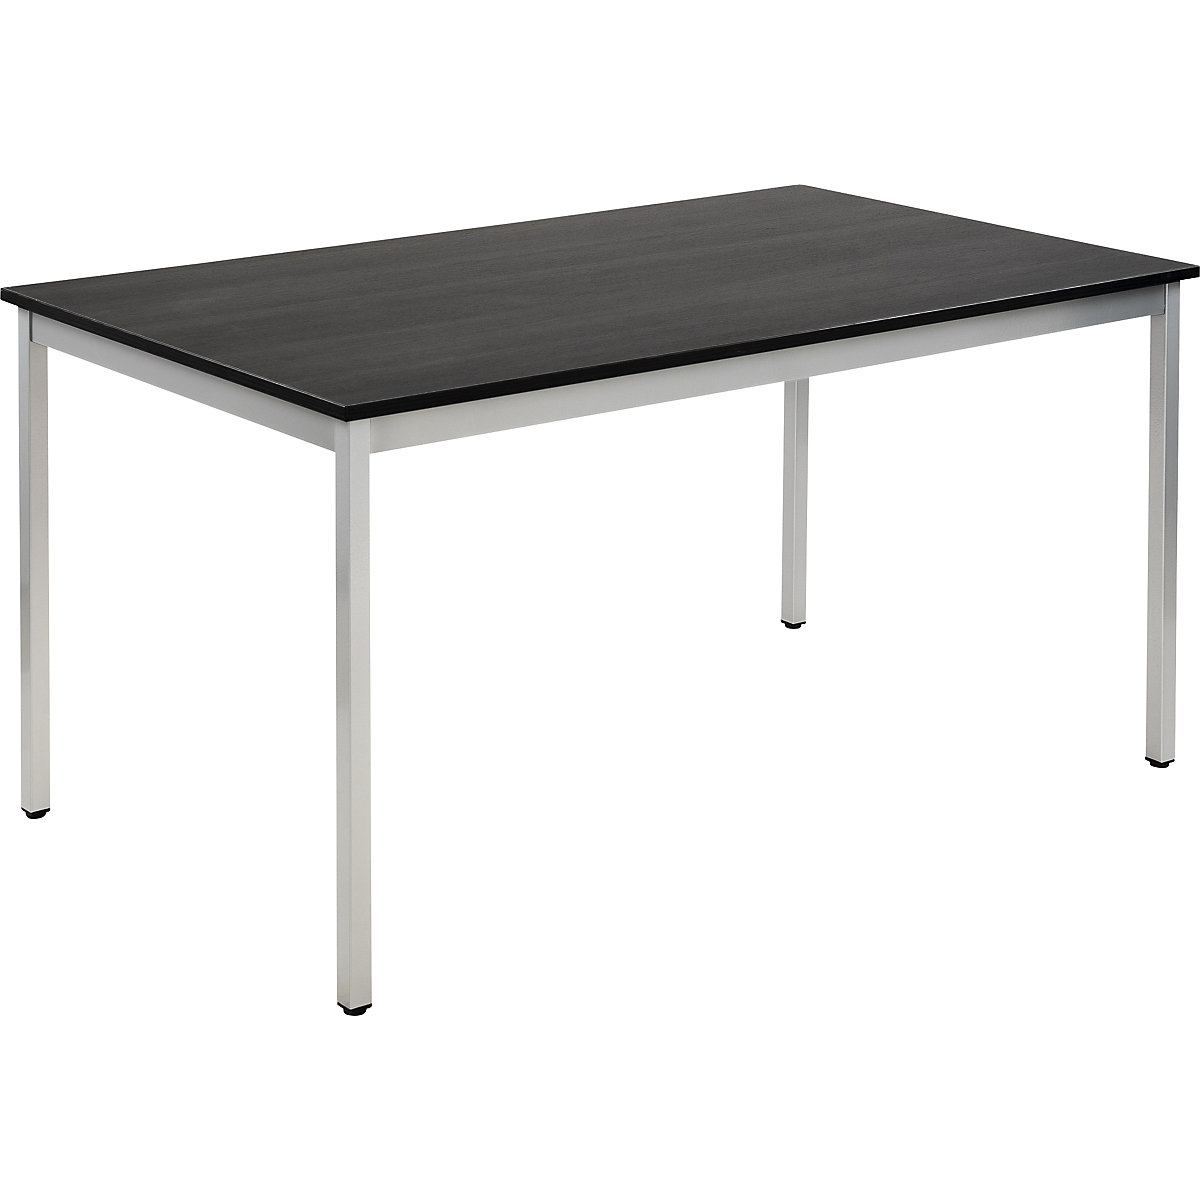 EUROKRAFTbasic – Višenamjenski stol, pravokutna izvedba, ŠxV 1400 x 740 mm, dubina 800 mm, ploča u imitaciji jasena u tamnosivoj boji, postolje u aluminij bijeloj boji